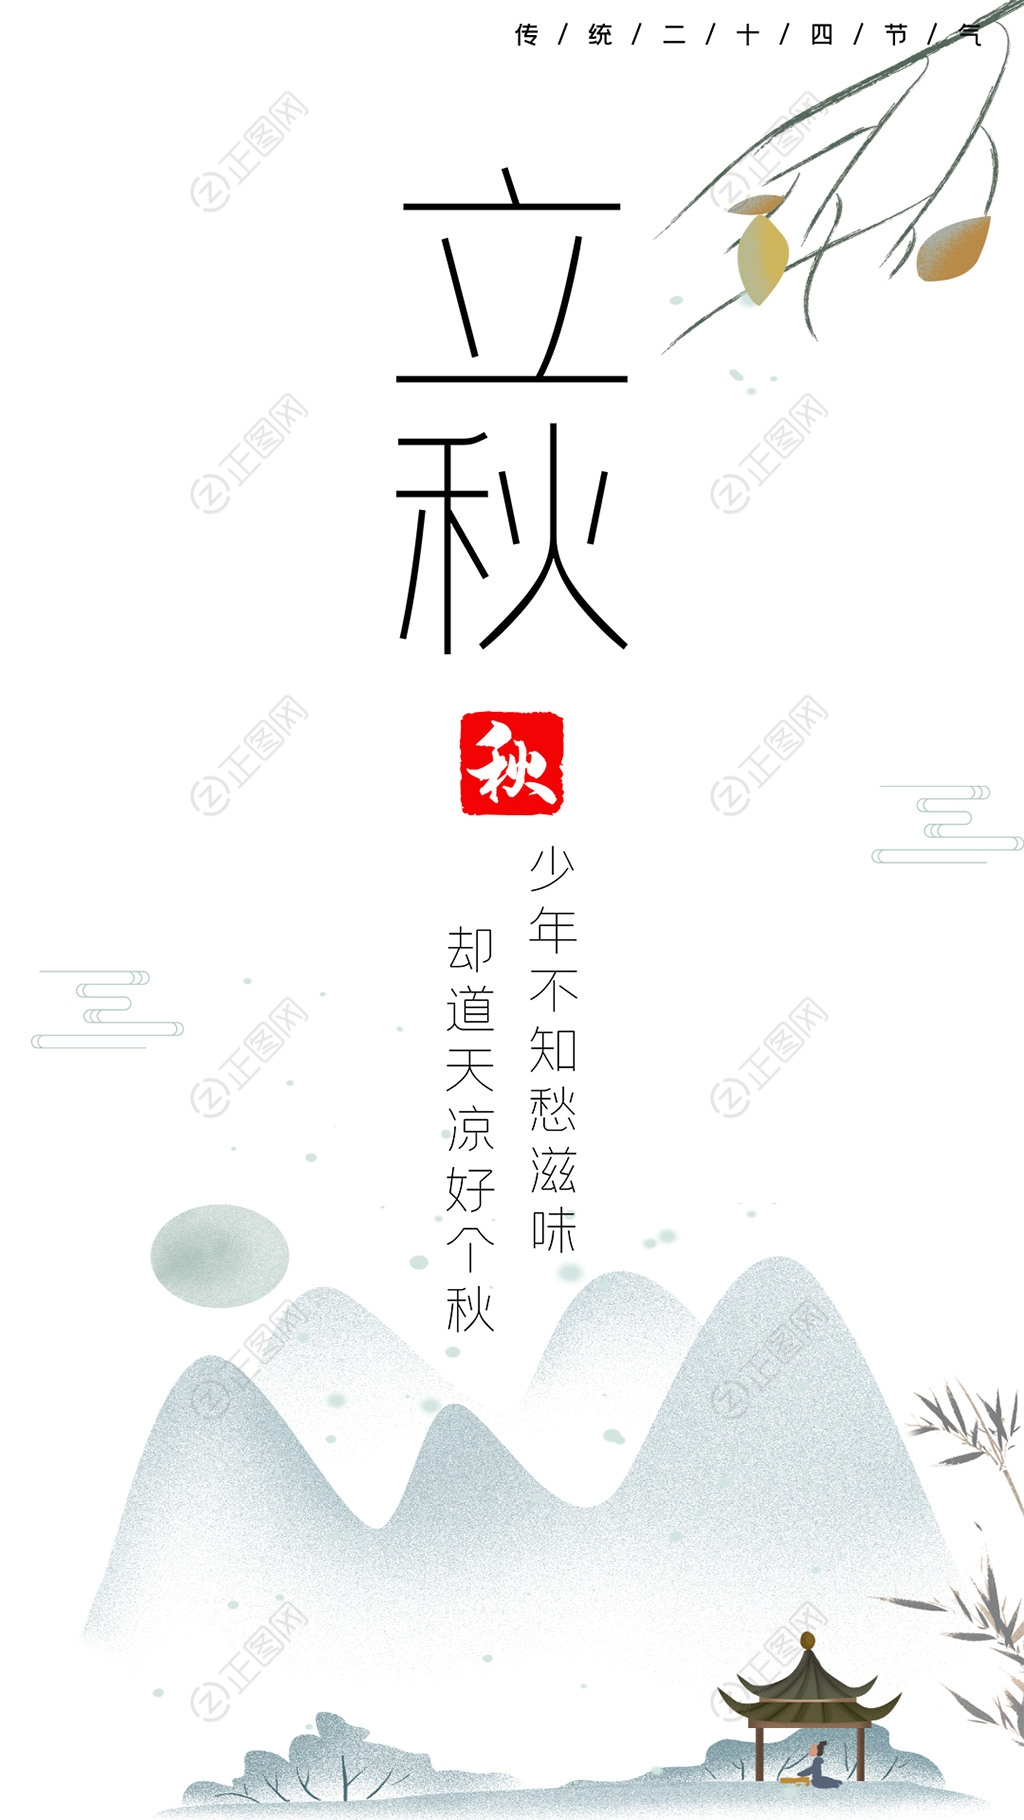 中国风简洁立秋海报psd素材